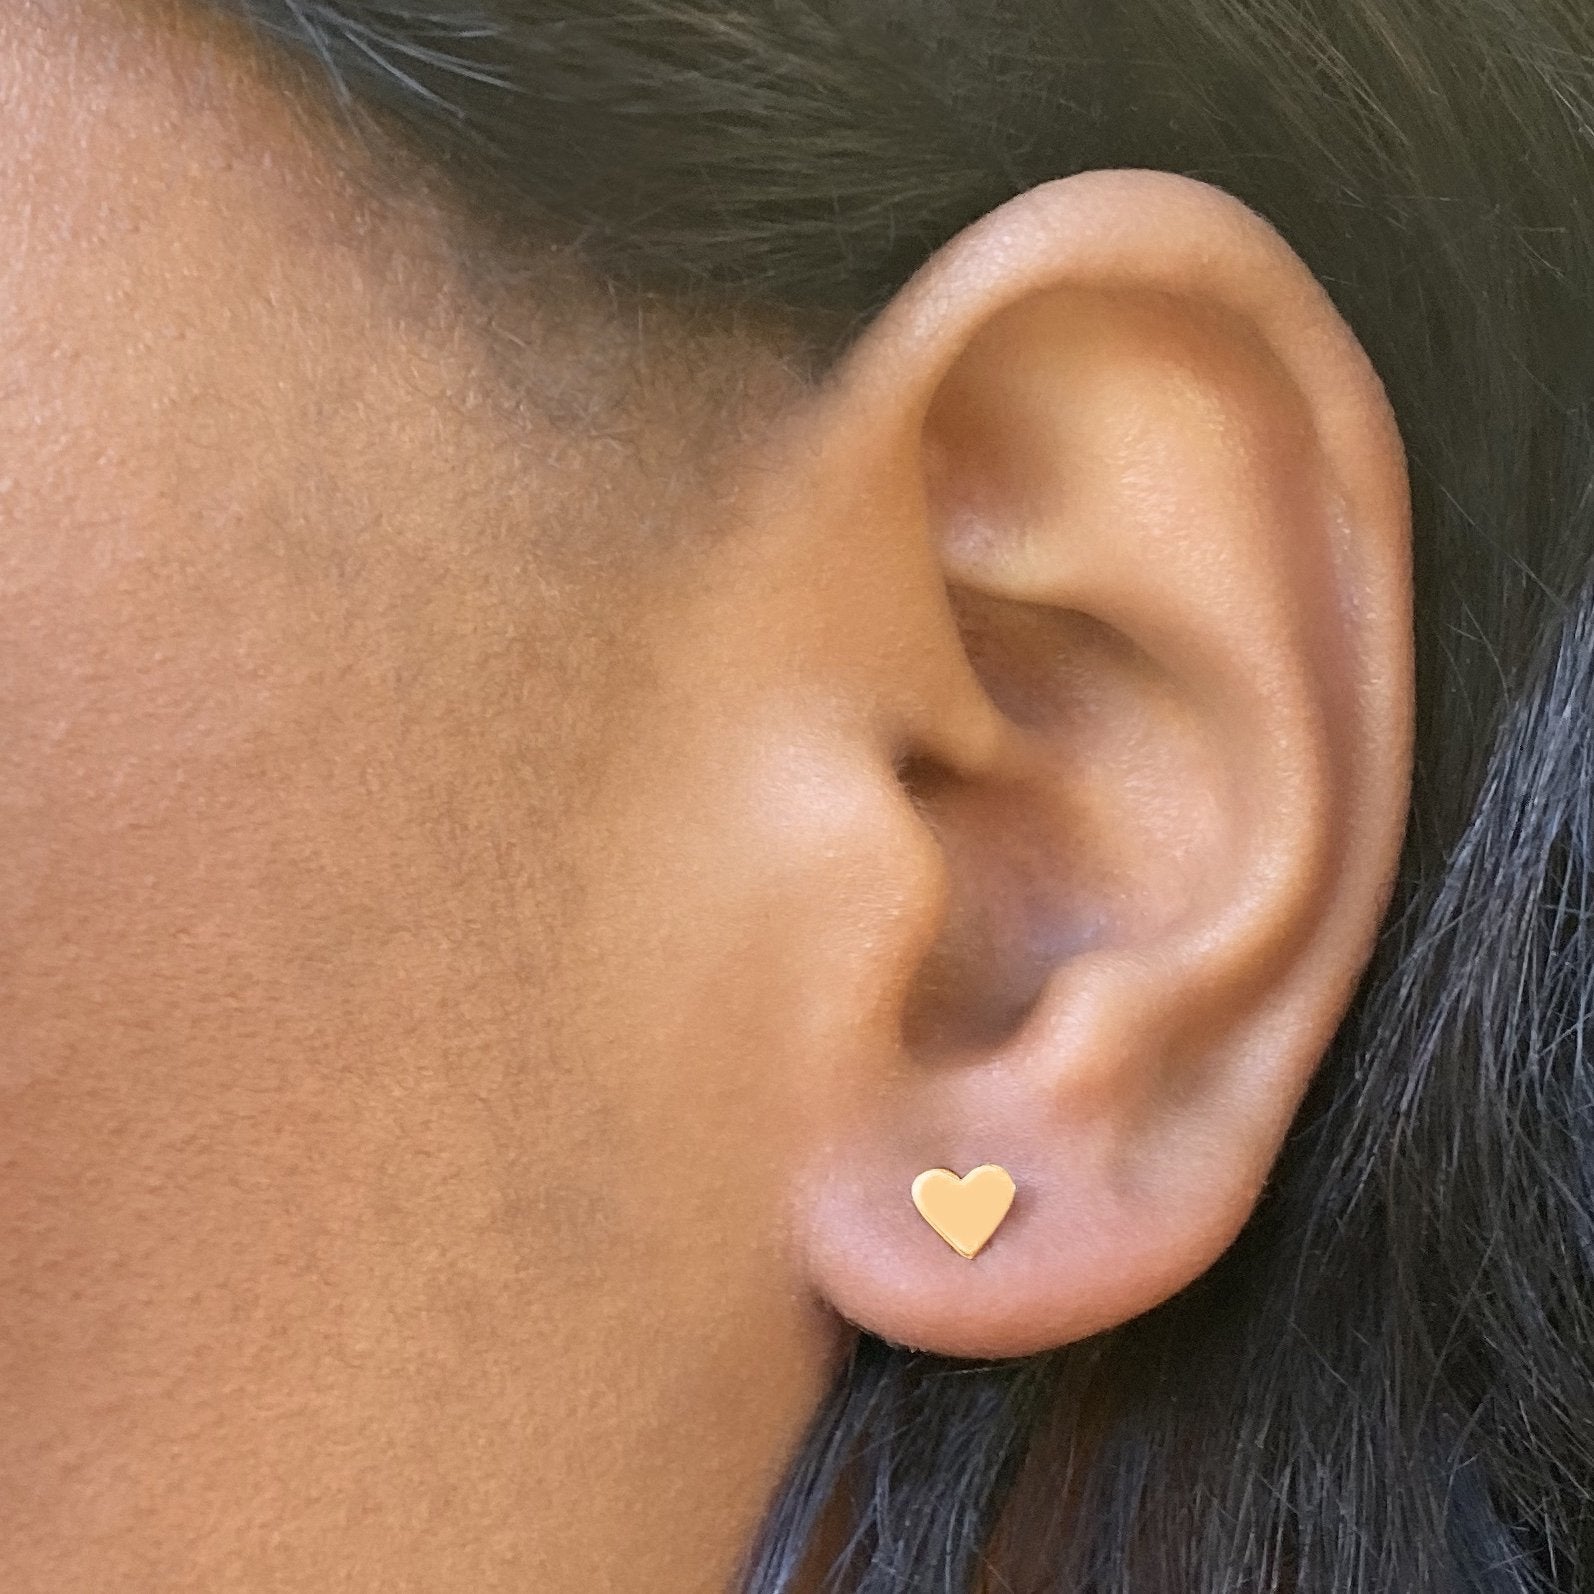 Heart Earrings in 14k Gold - Mazi New York-jewelry